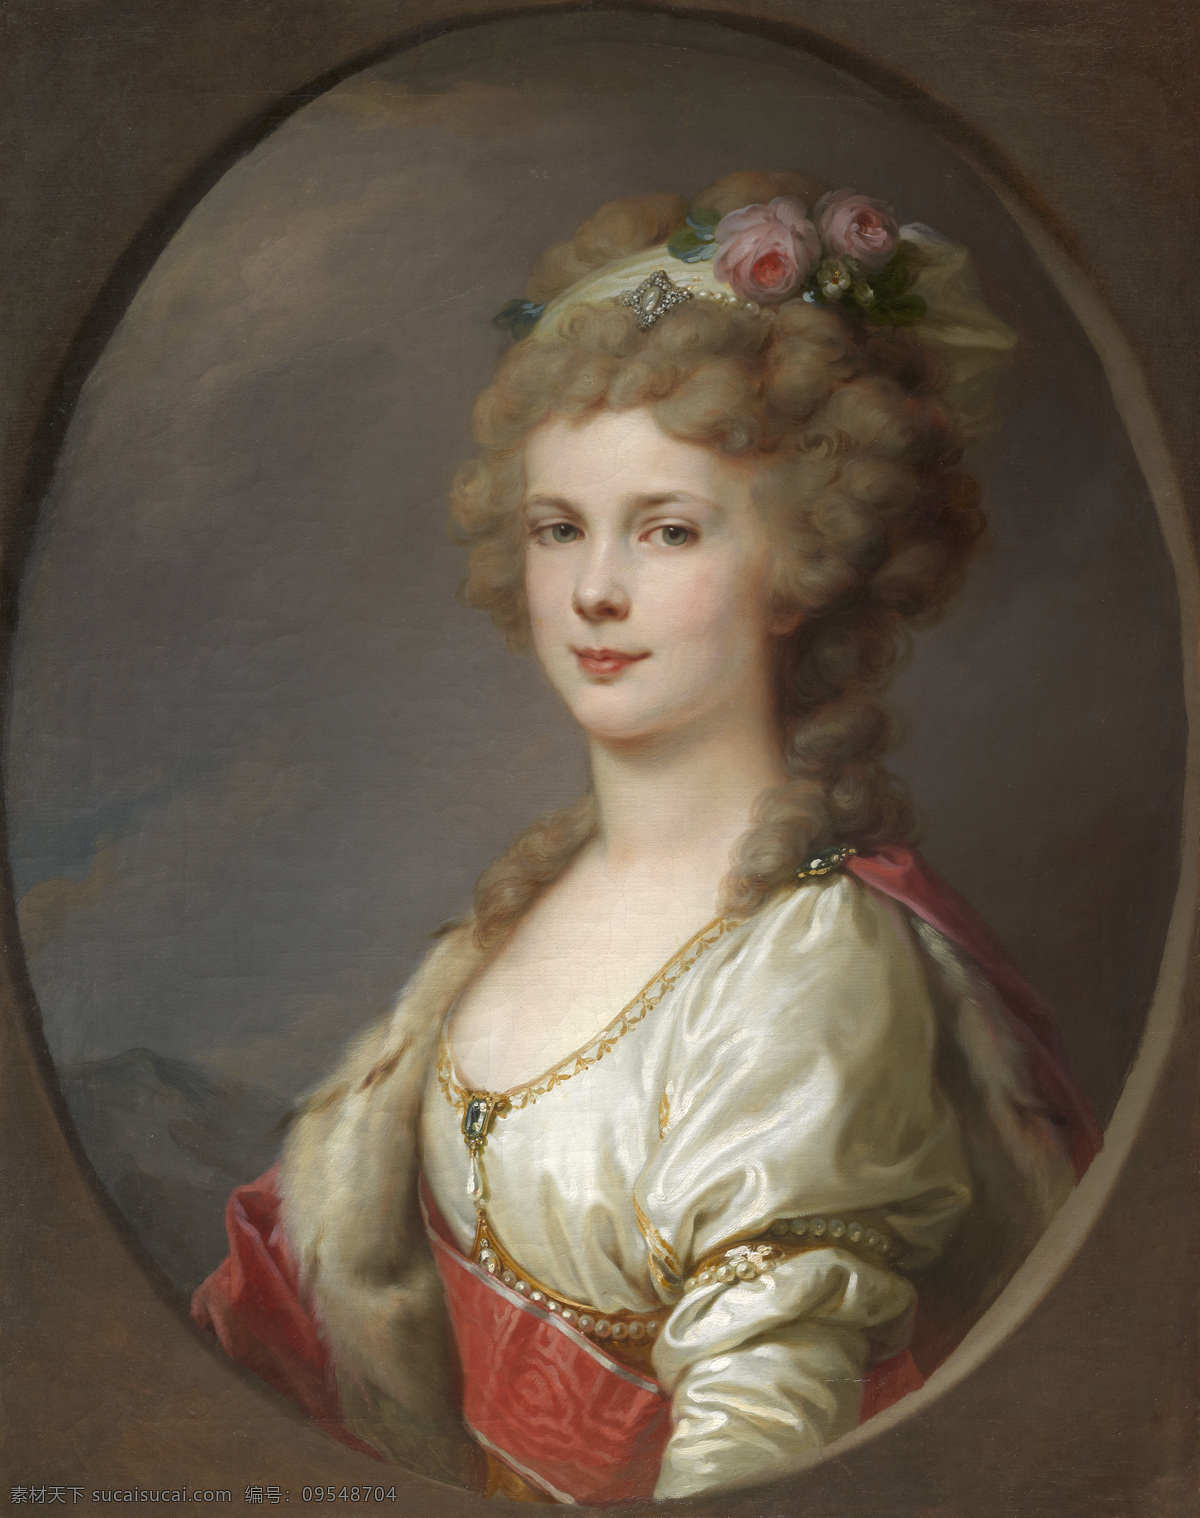 艾 琳娜 帕 芙 罗 芙娜 兰皮作品 俄国公主 梅克伦堡 什未林 公爵夫人 沙皇 保罗 一世 次女 母亲 黑森 符 登堡 公主 玛丽娅 19世纪油画 油画 绘画书法 文化艺术